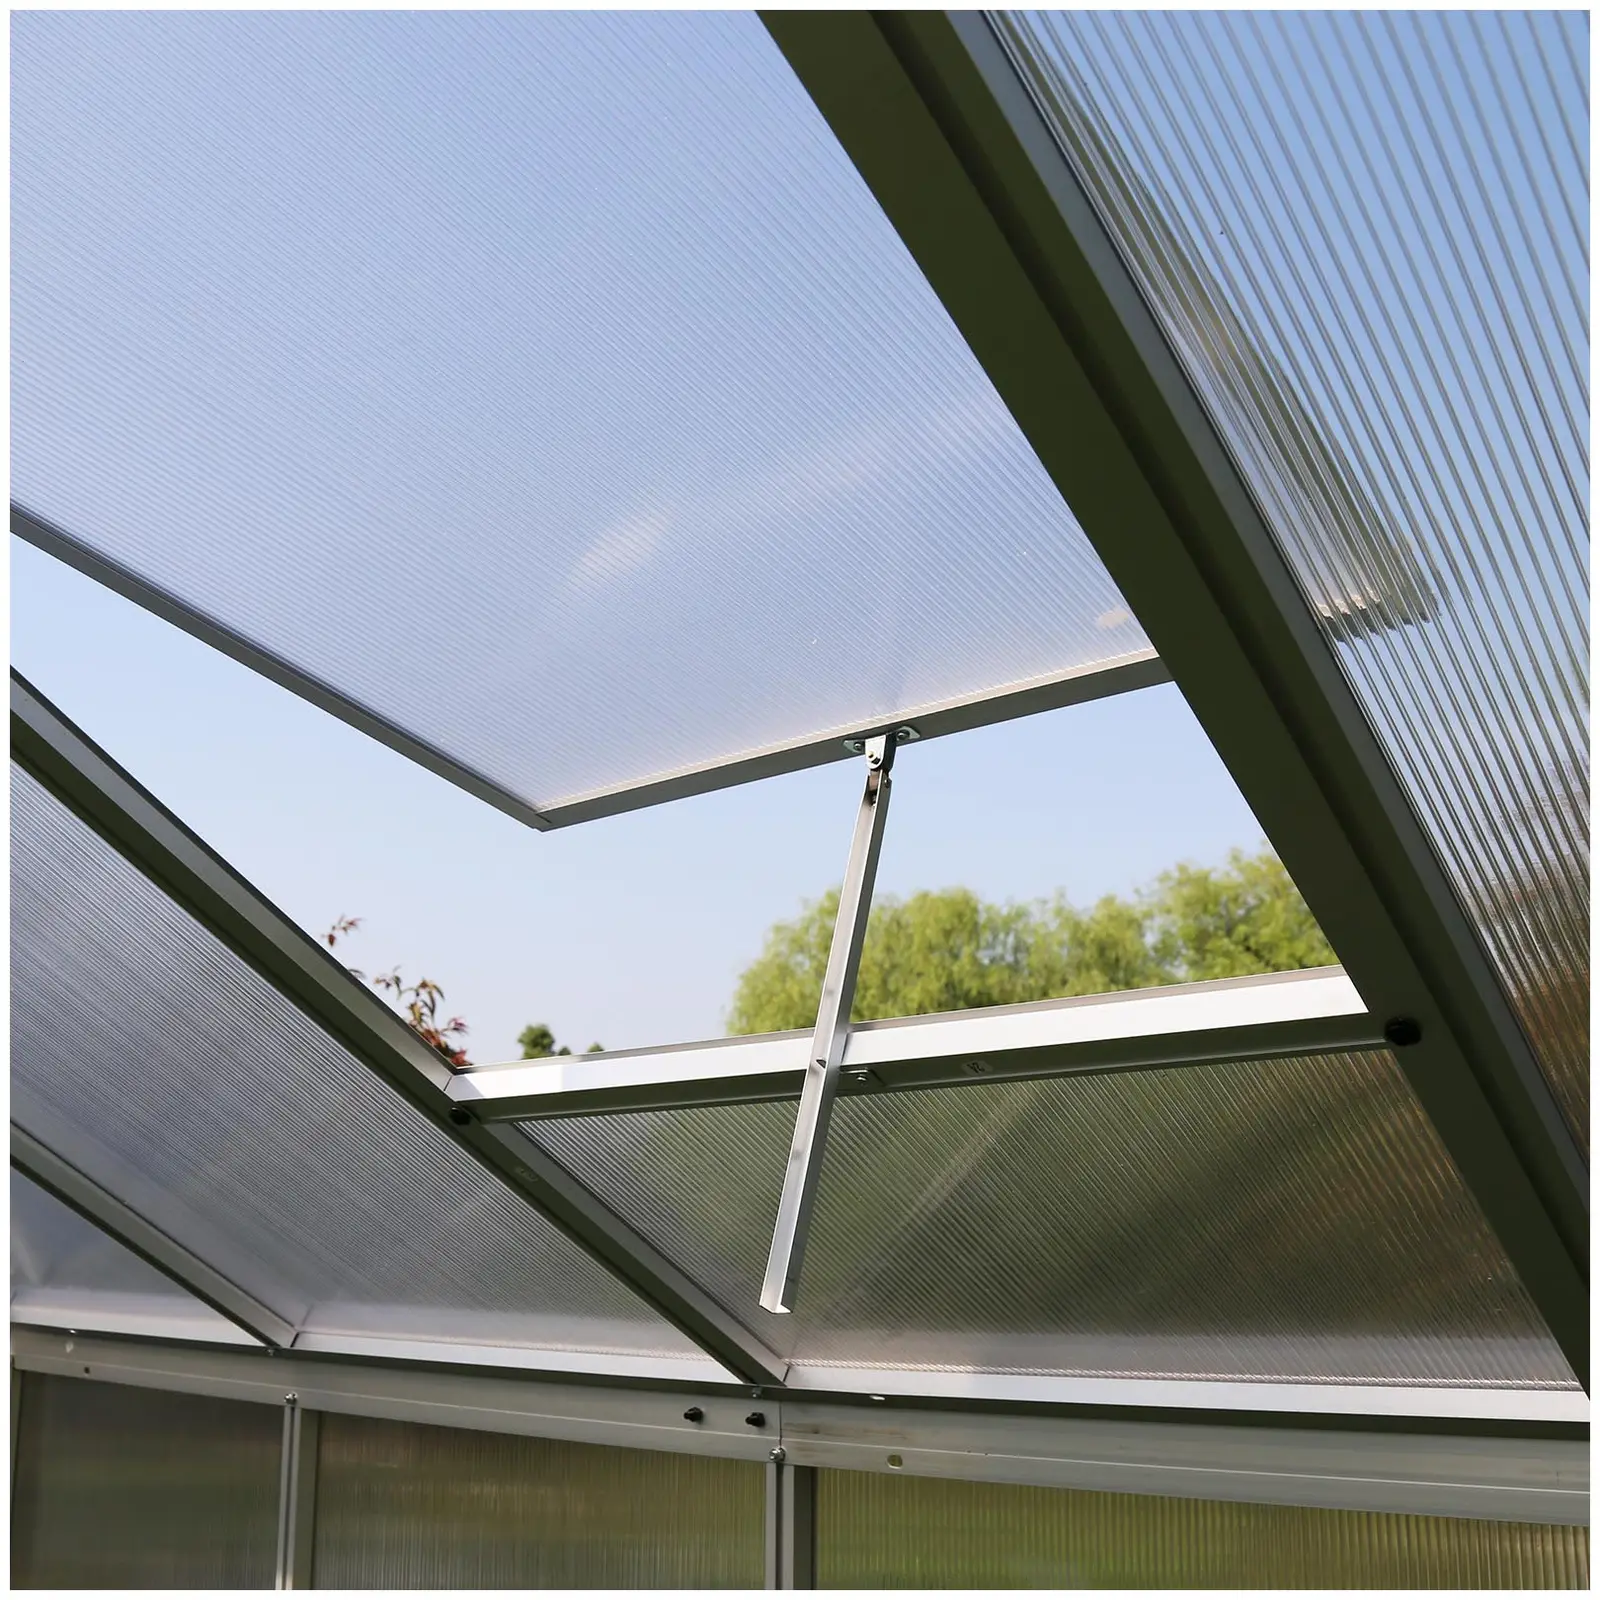 Greenhouse - 301 x 178 x 195 cm - polycarbonate + aluminium